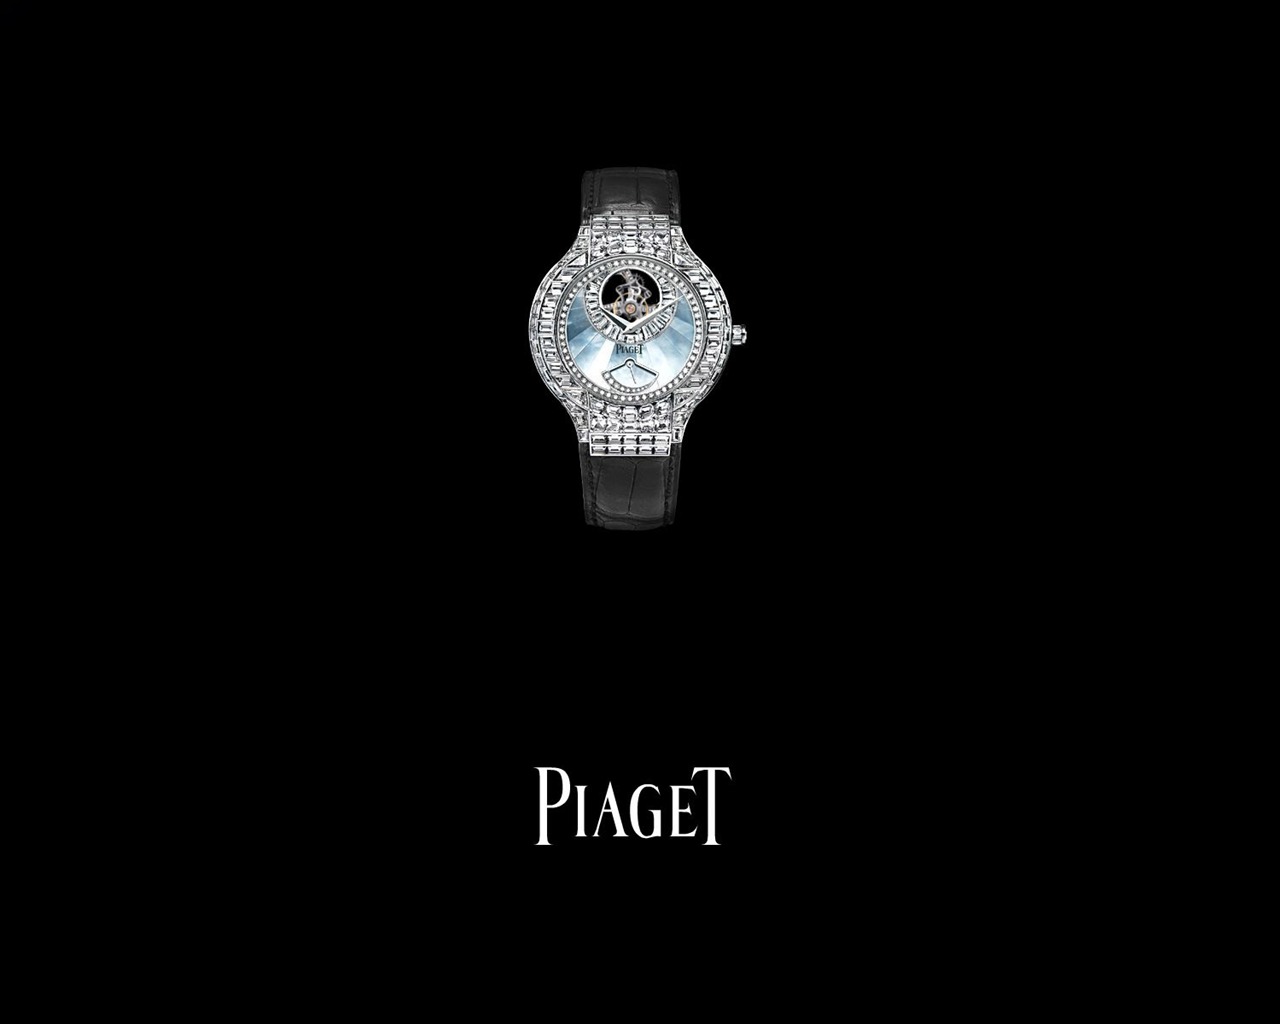 피아제 다이아몬드 시계 벽지 (1) #8 - 1280x1024